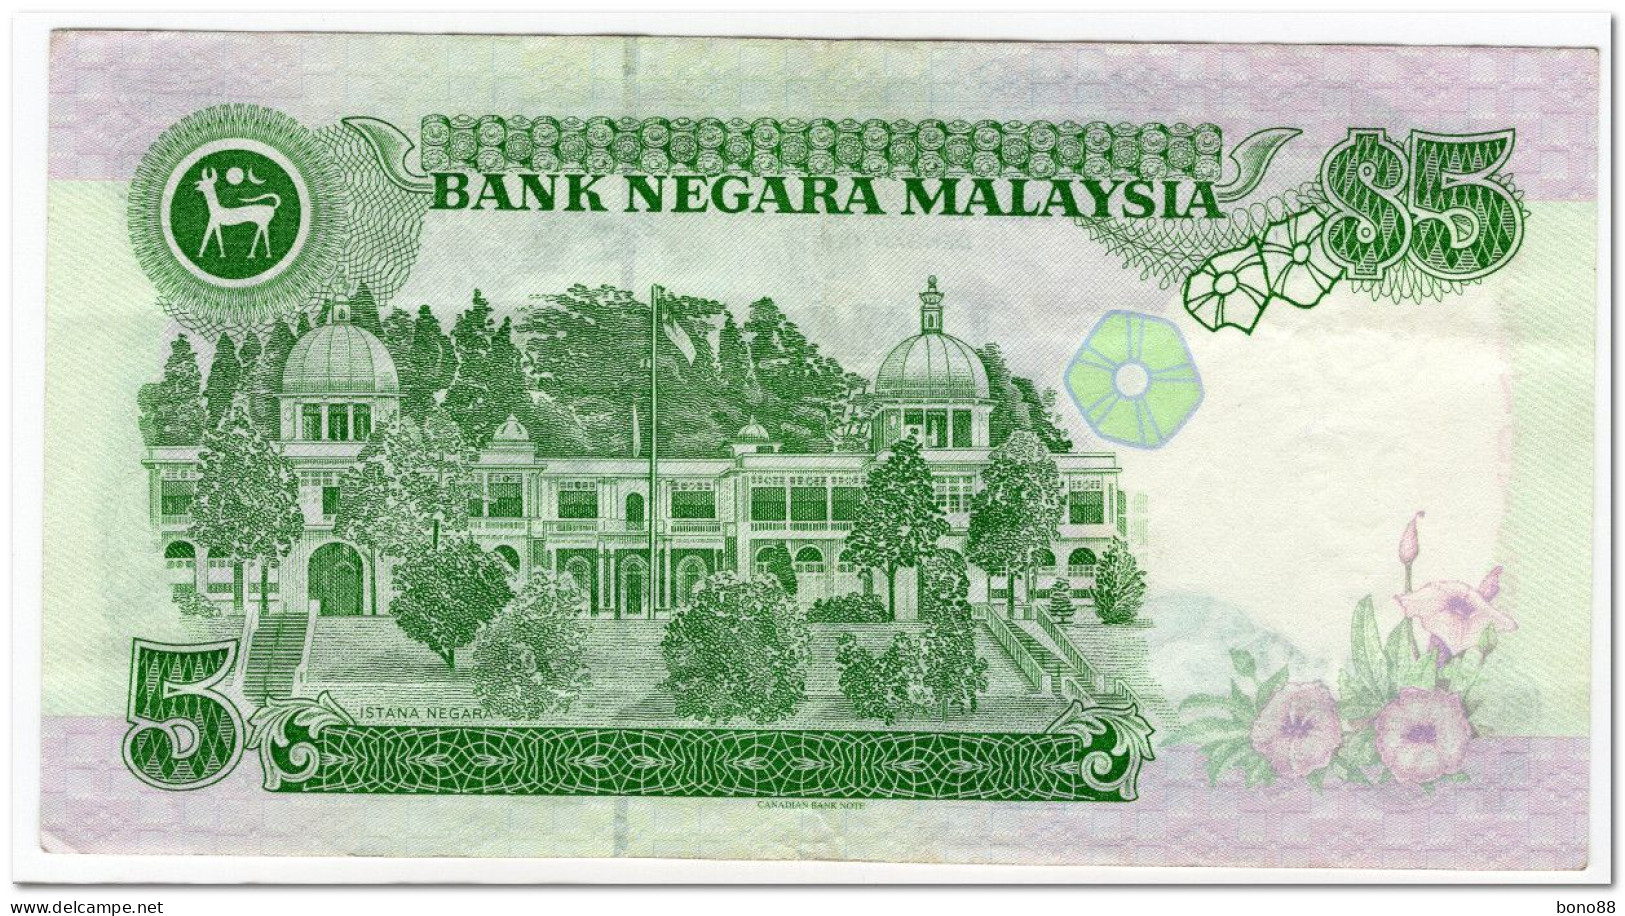 MALAYSIA,5 RINGGIT,1995,P.35,VF+ - Malaysia